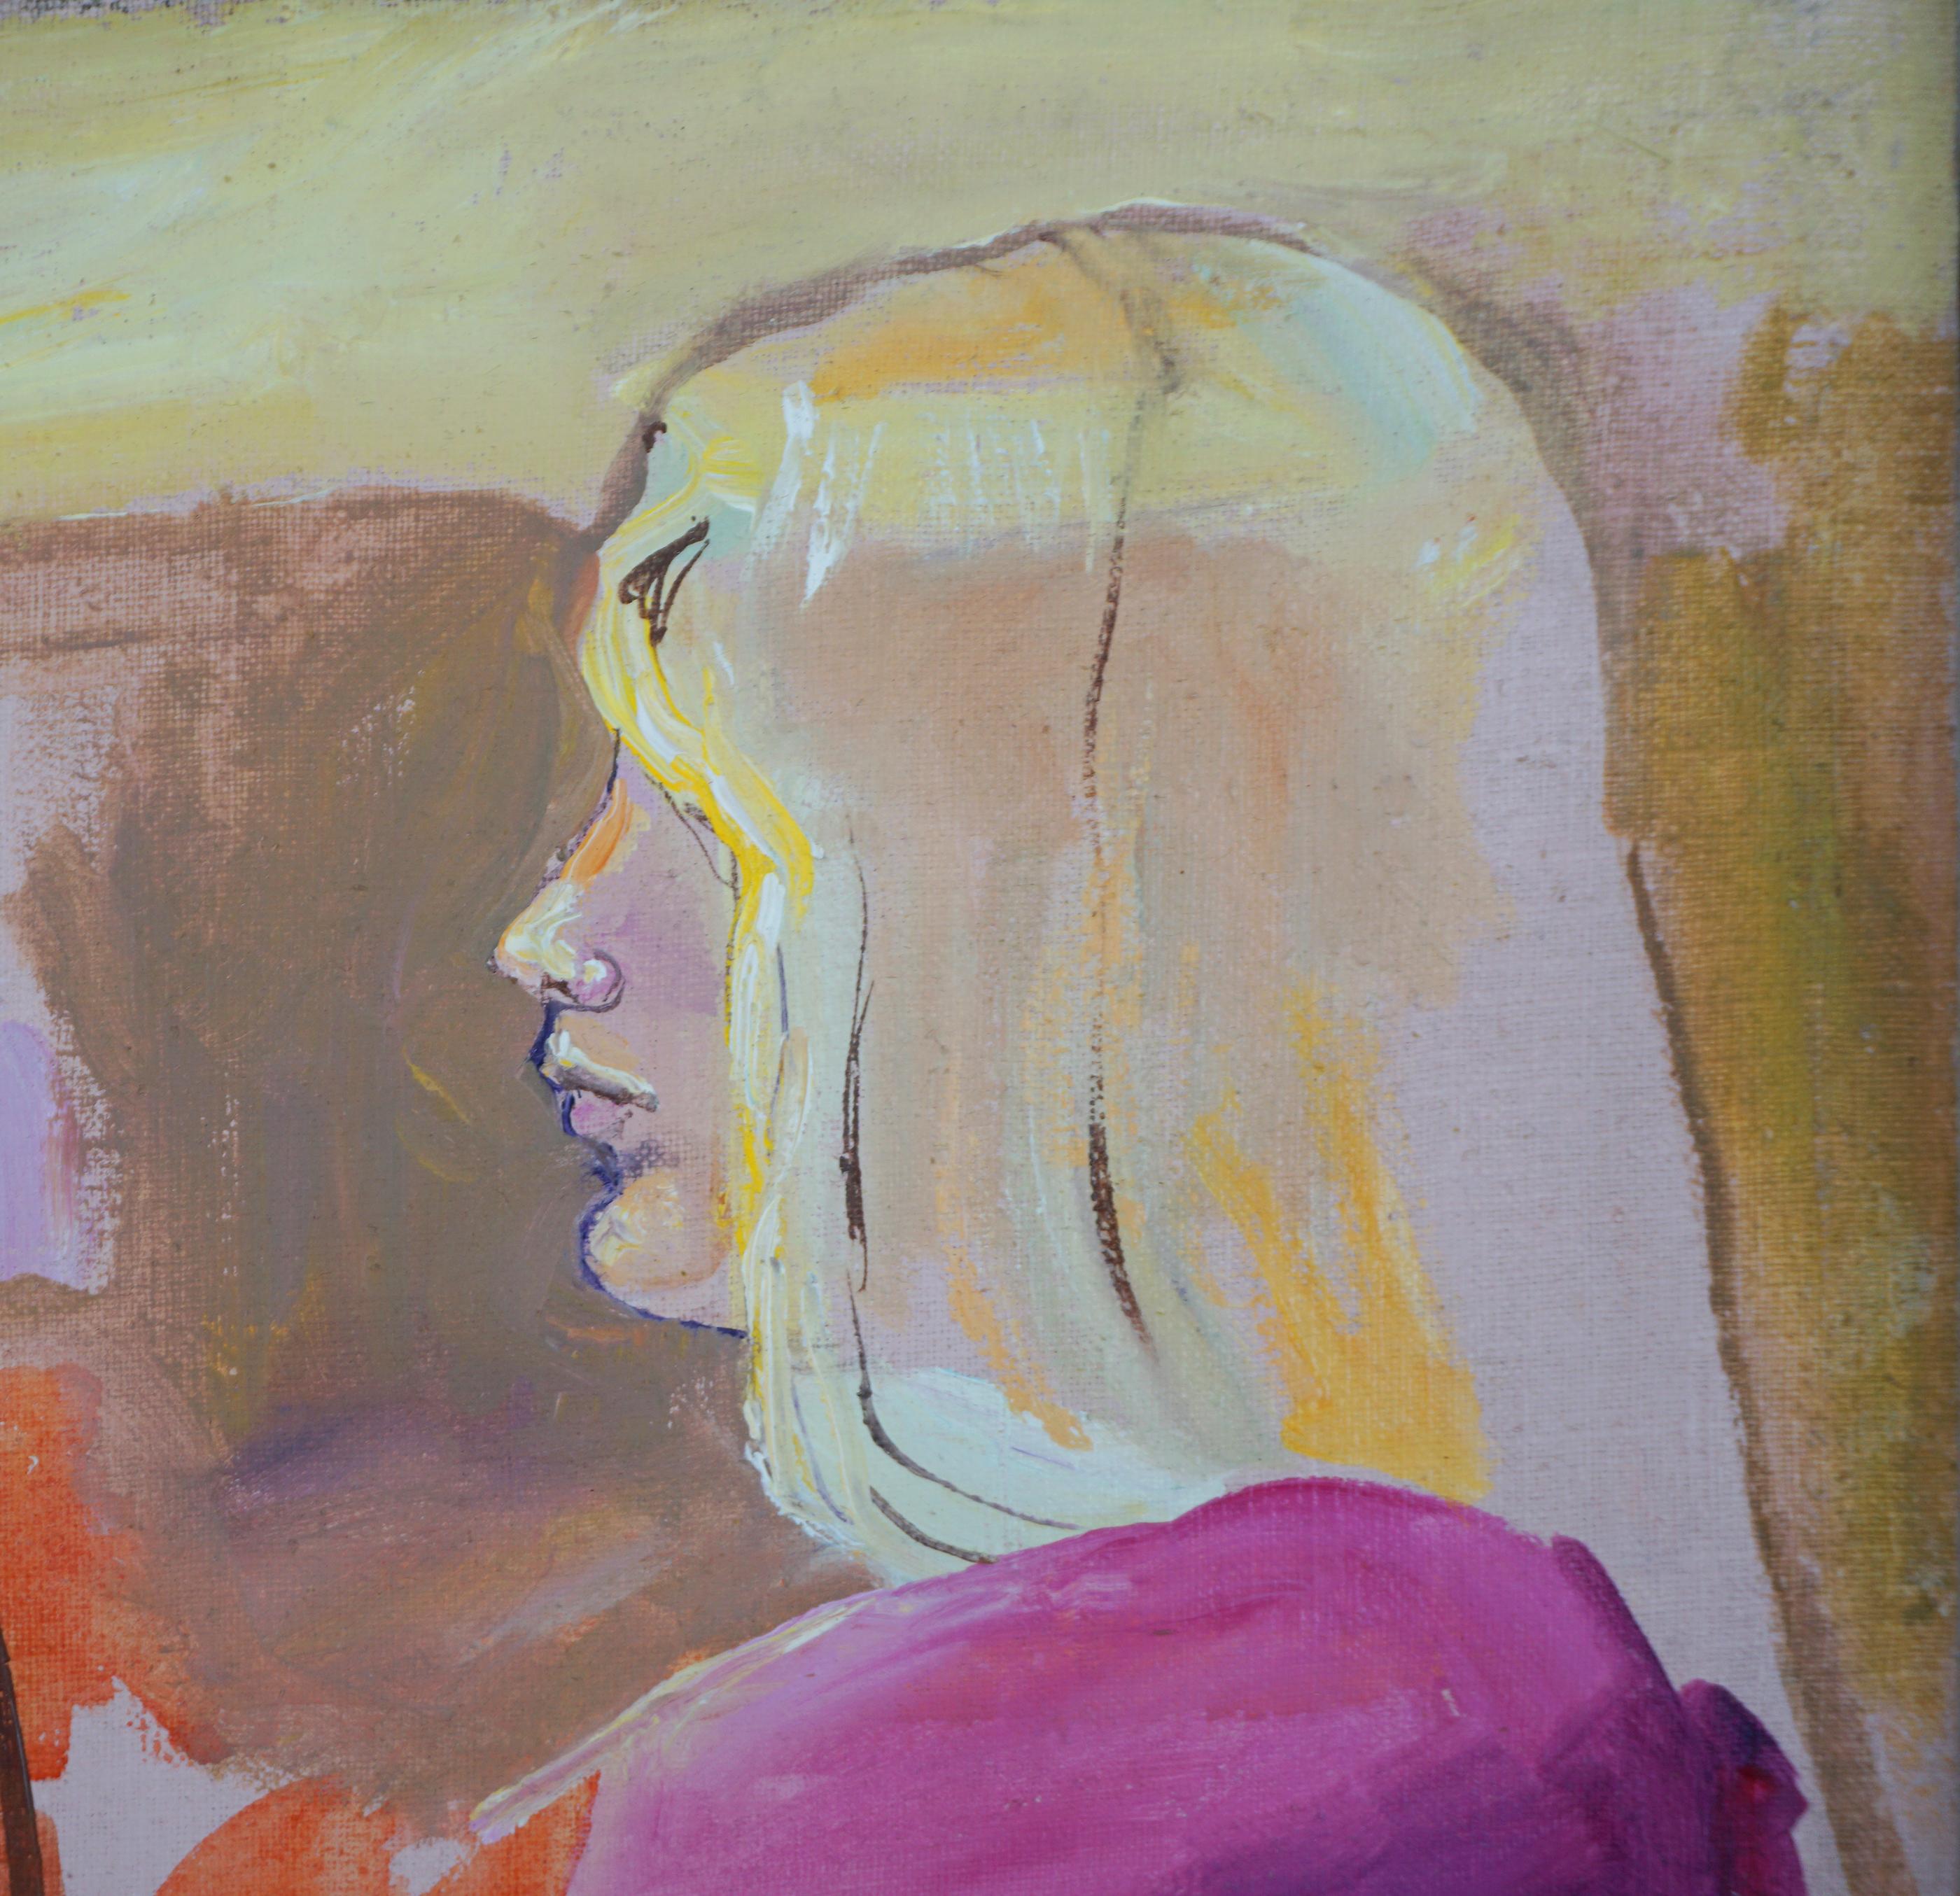 Étude figurative de femmes par la peintre américaine Patricia Gren Hayes (née en 1932). Femmes blondes aux cheveux longs portant une salopette, vue de côté de la même femme et autre étude de vue de côté d'une brune, vers 1970.
